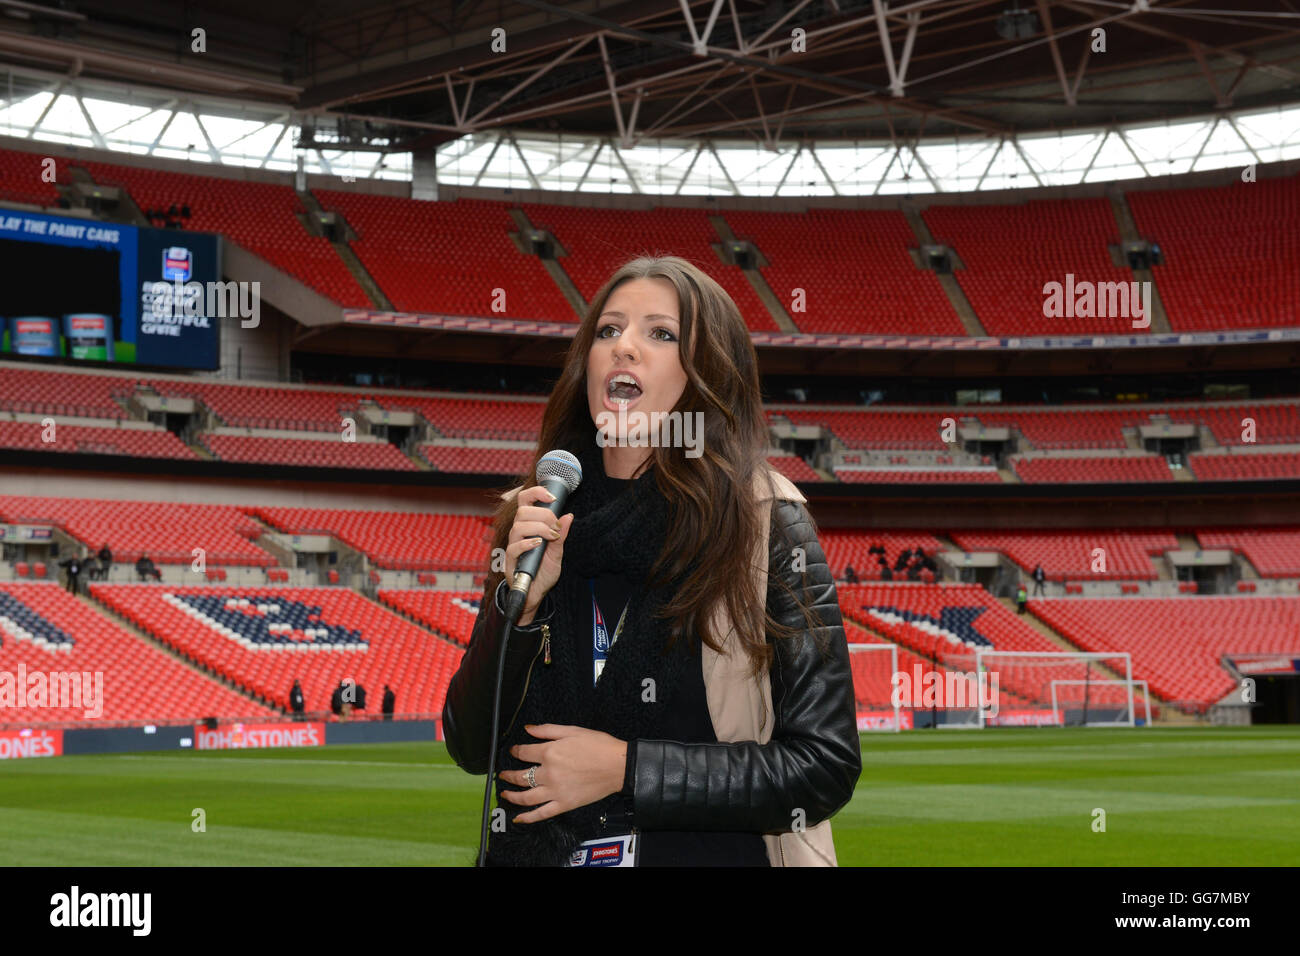 La chanteuse britannique Faryl Smith un chant à Wembley 2015 Banque D'Images